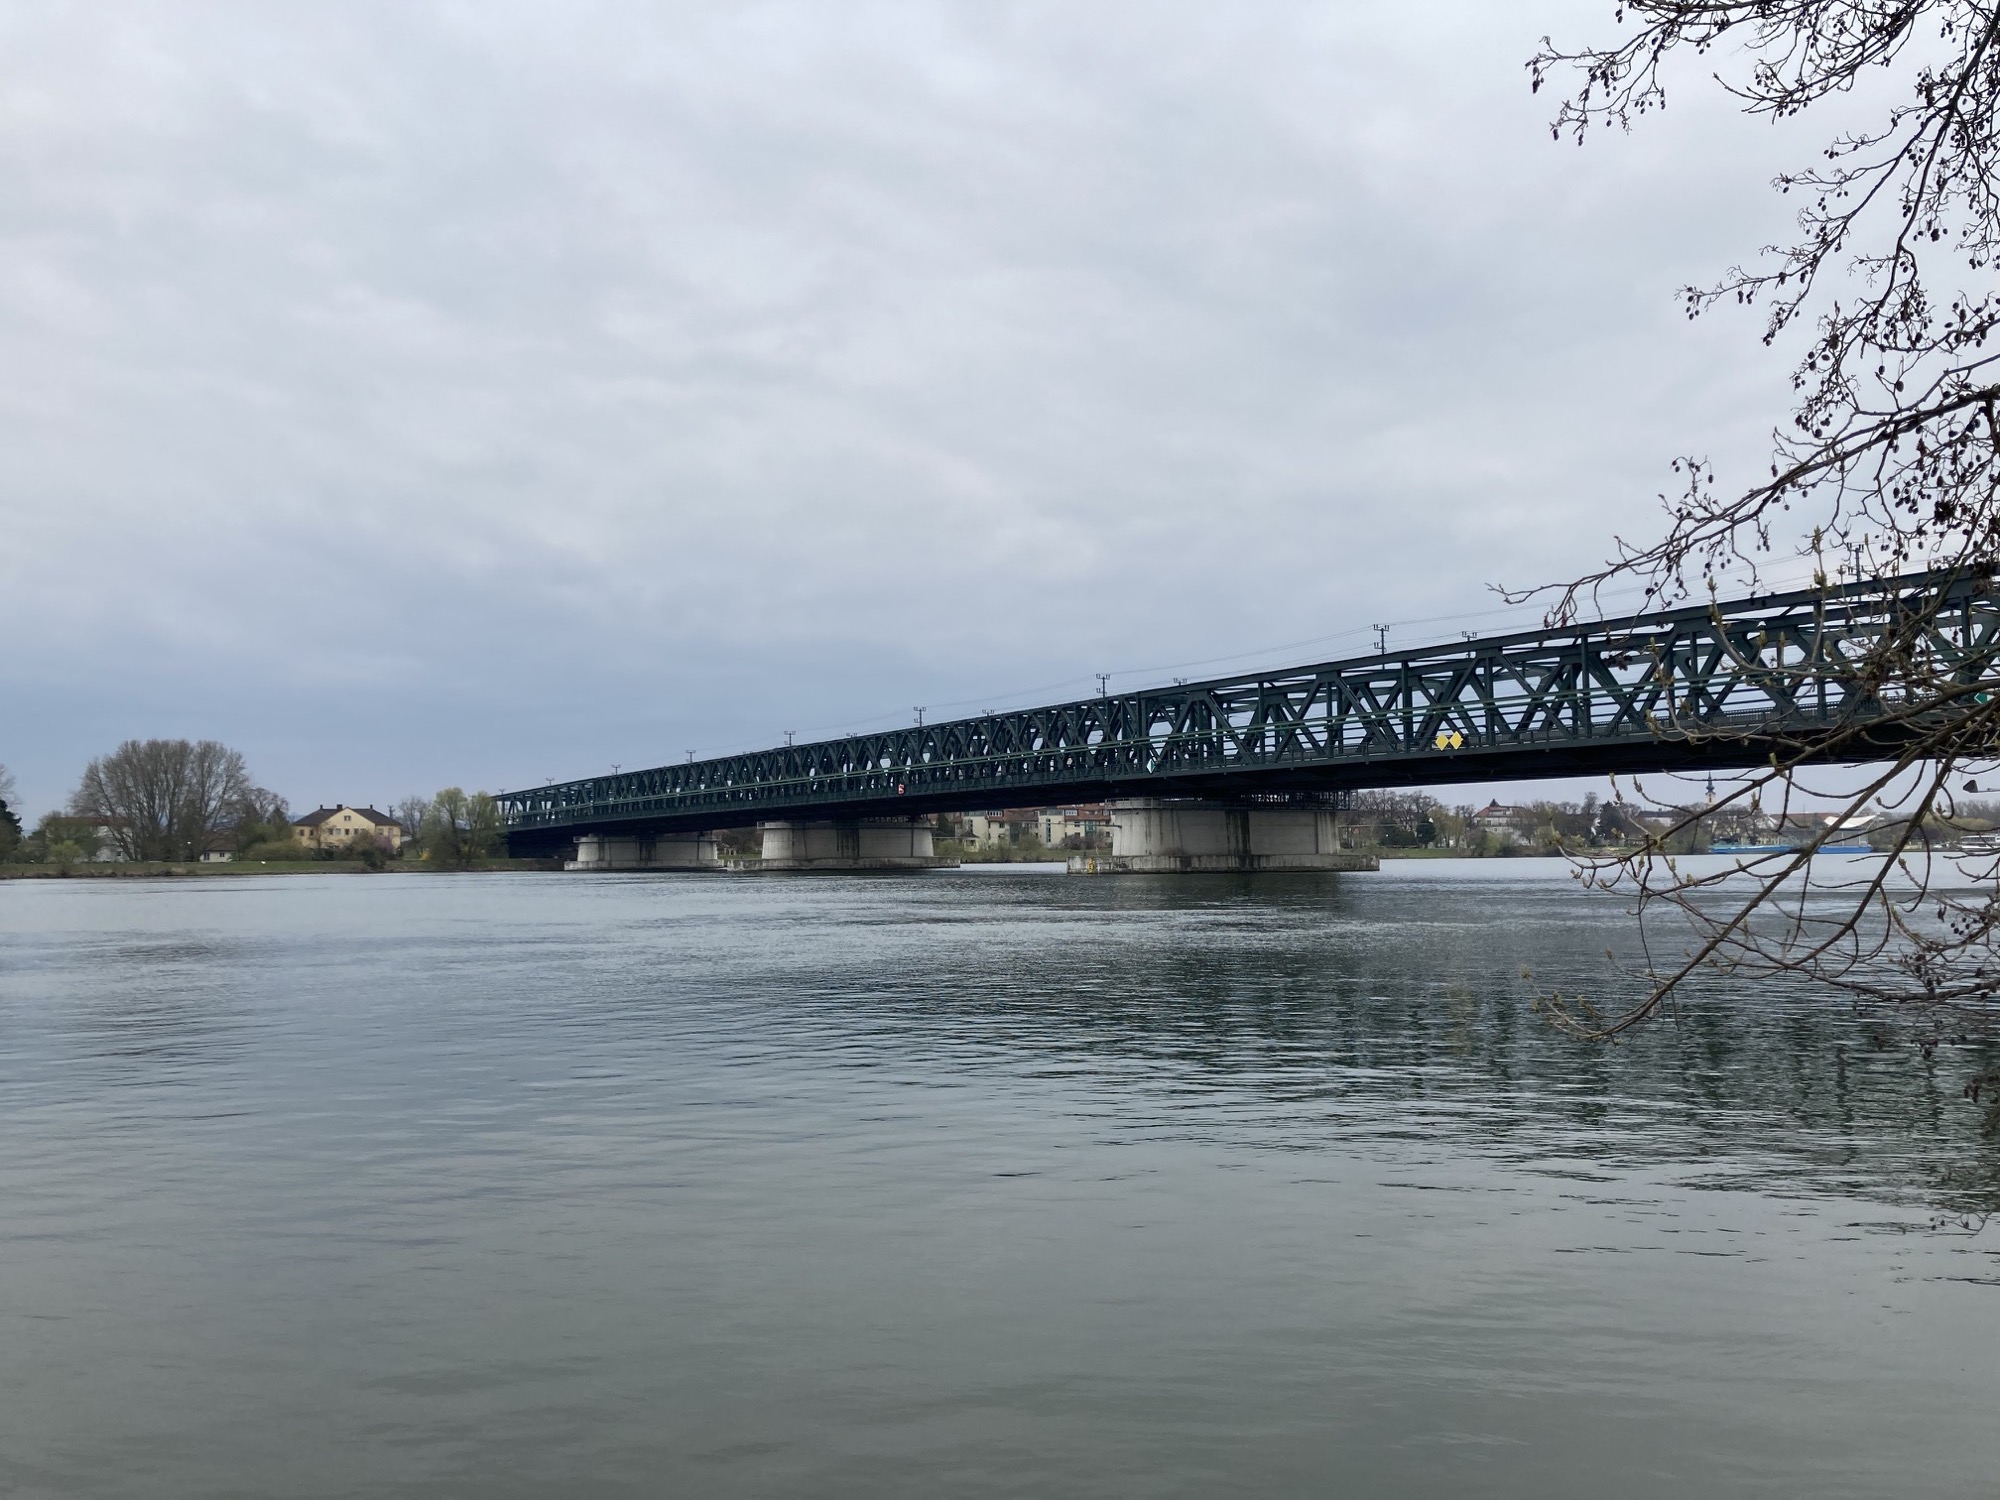 Tullner Donaubrücke vom nördlichen Donauufer aus gesehen, vor bewölktem, düsteren Himmel